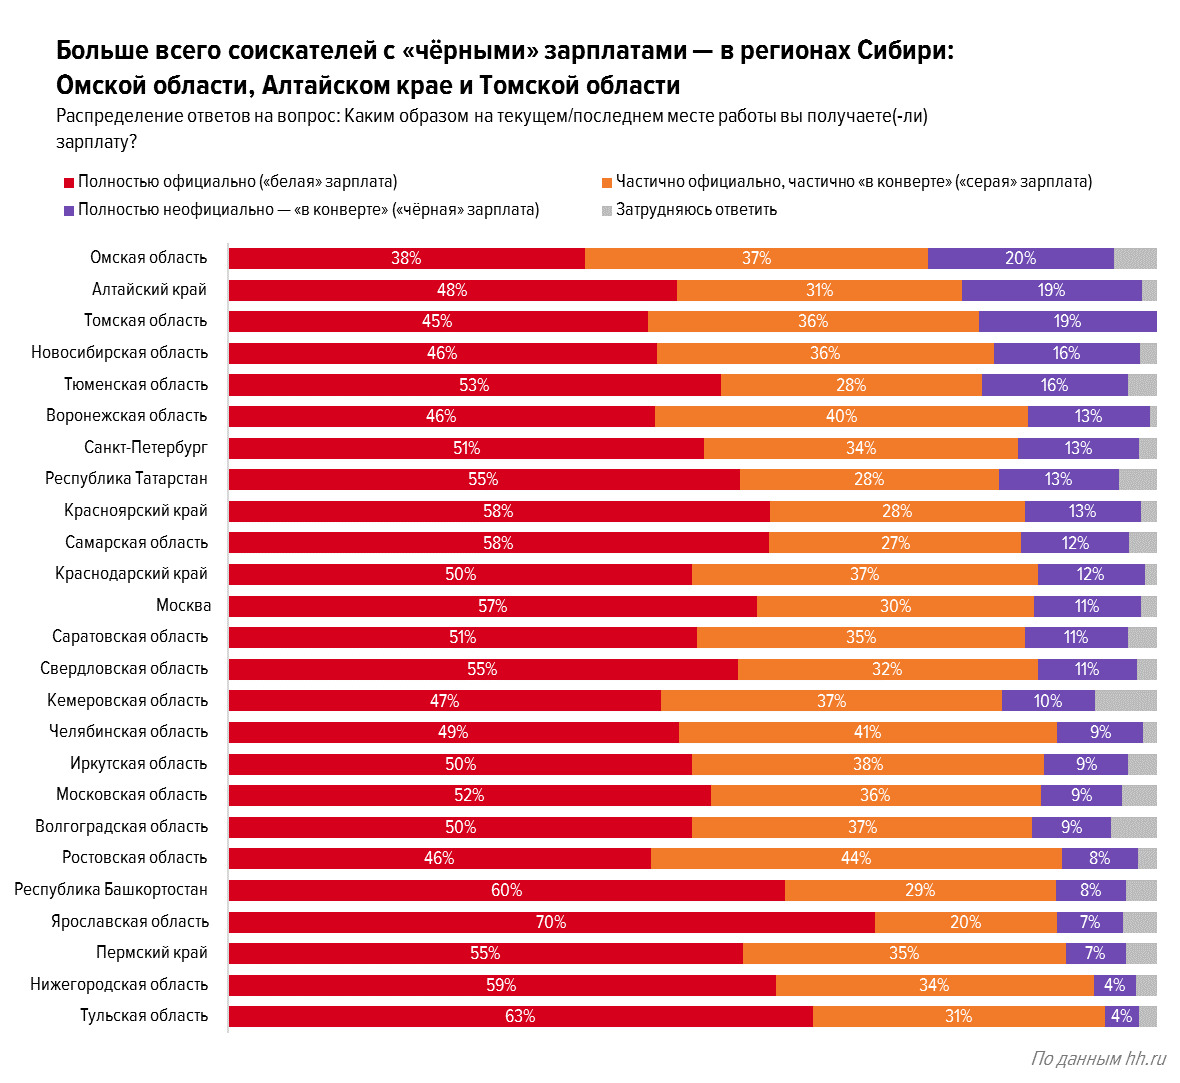 Ярославская область лидирует по количеству соискателей с «белыми» зарплатами